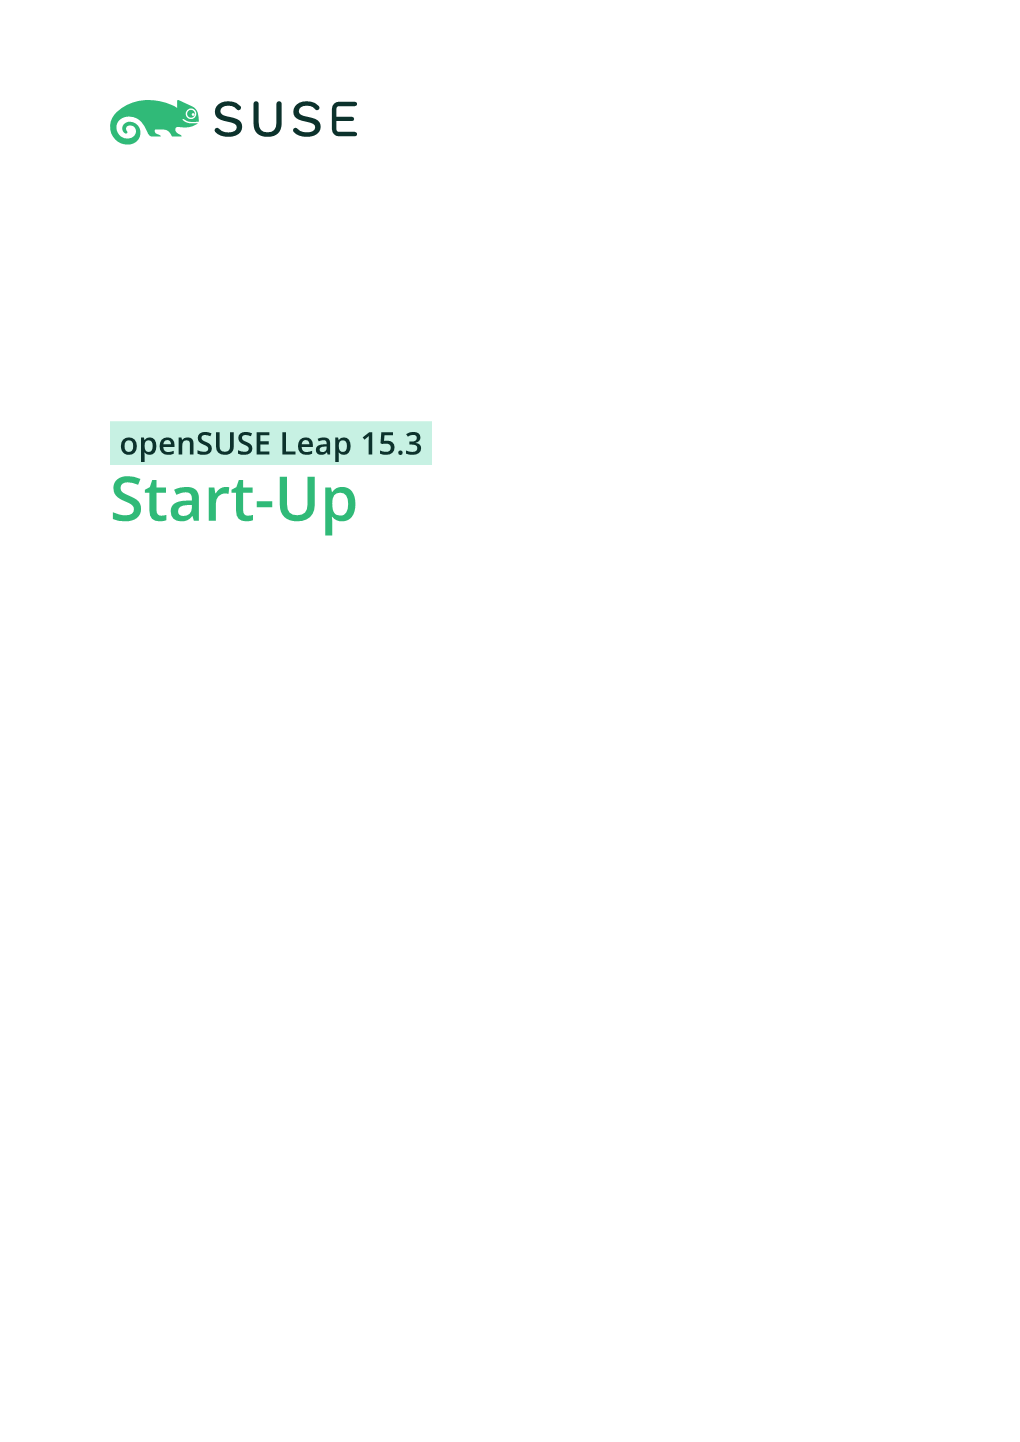 Opensuse Leap 15.3 Start-Up Start-Up Opensuse Leap 15.3